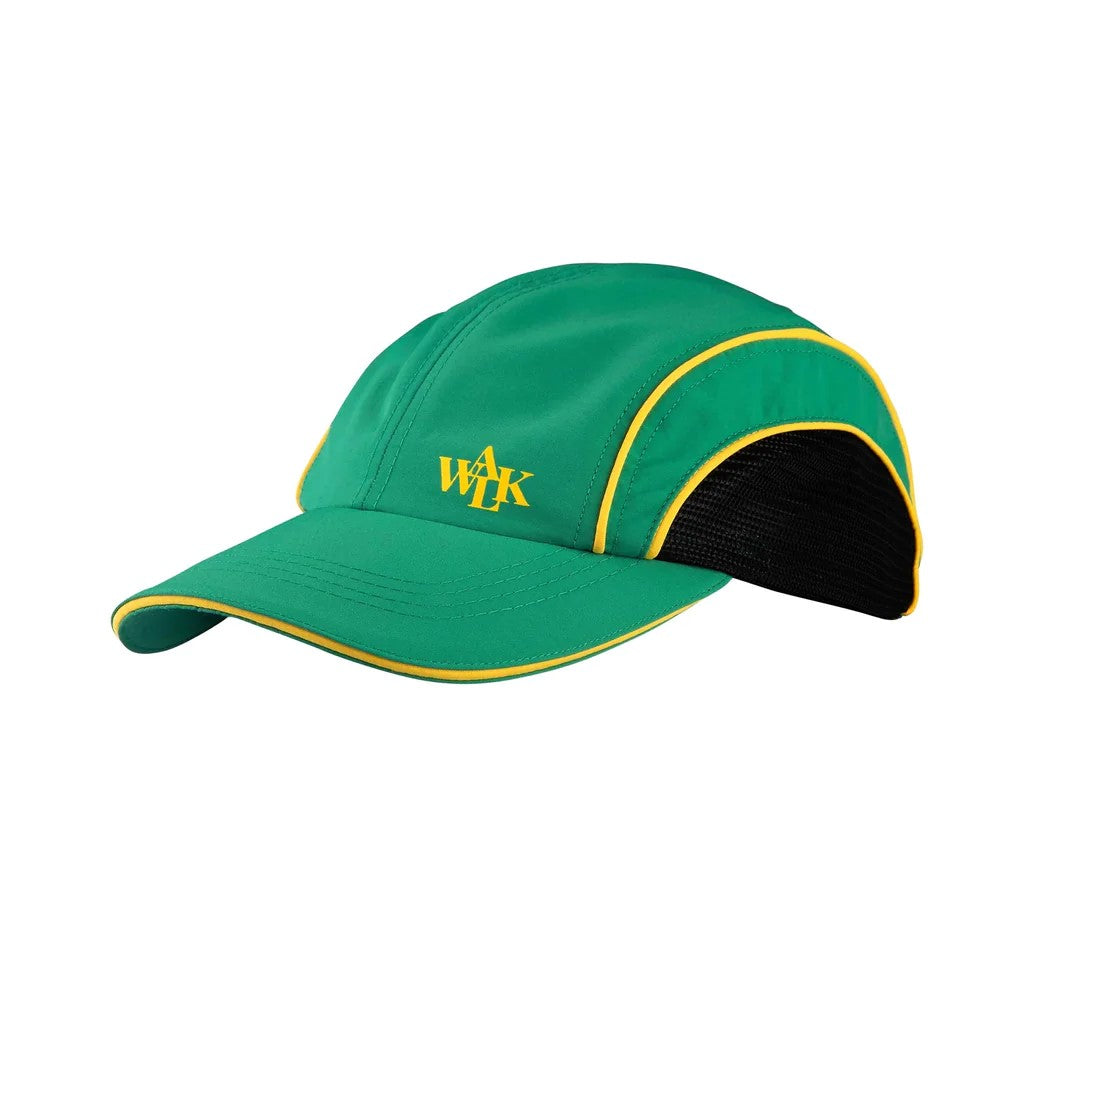 THE GREEN CAP